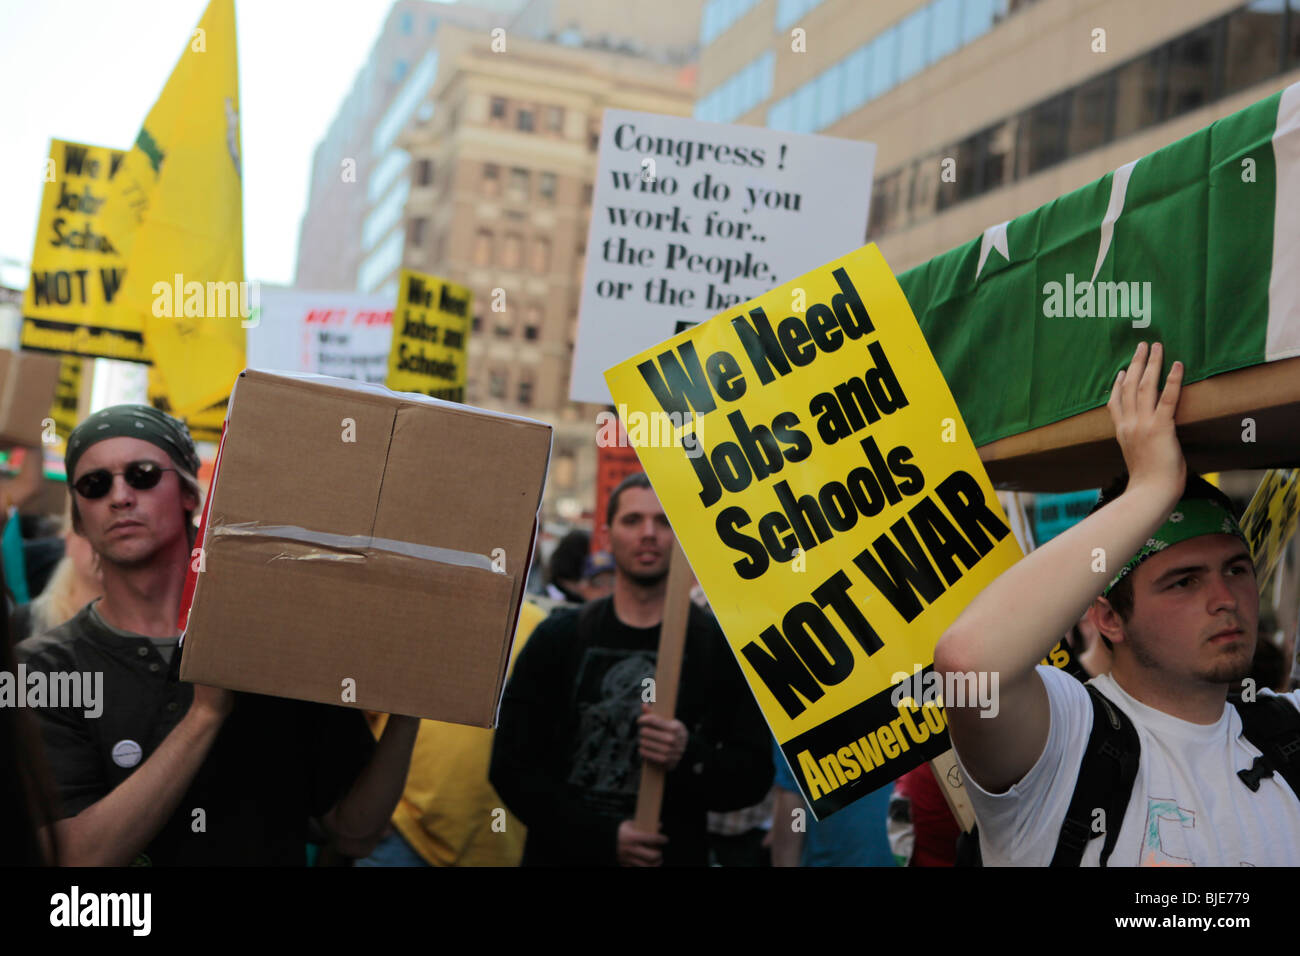 Les manifestants portant des cercueils en carton manifestation contre la guerre. Manifestation anti-guerre. Marche sur Washington. 20 mars, 2010 Banque D'Images